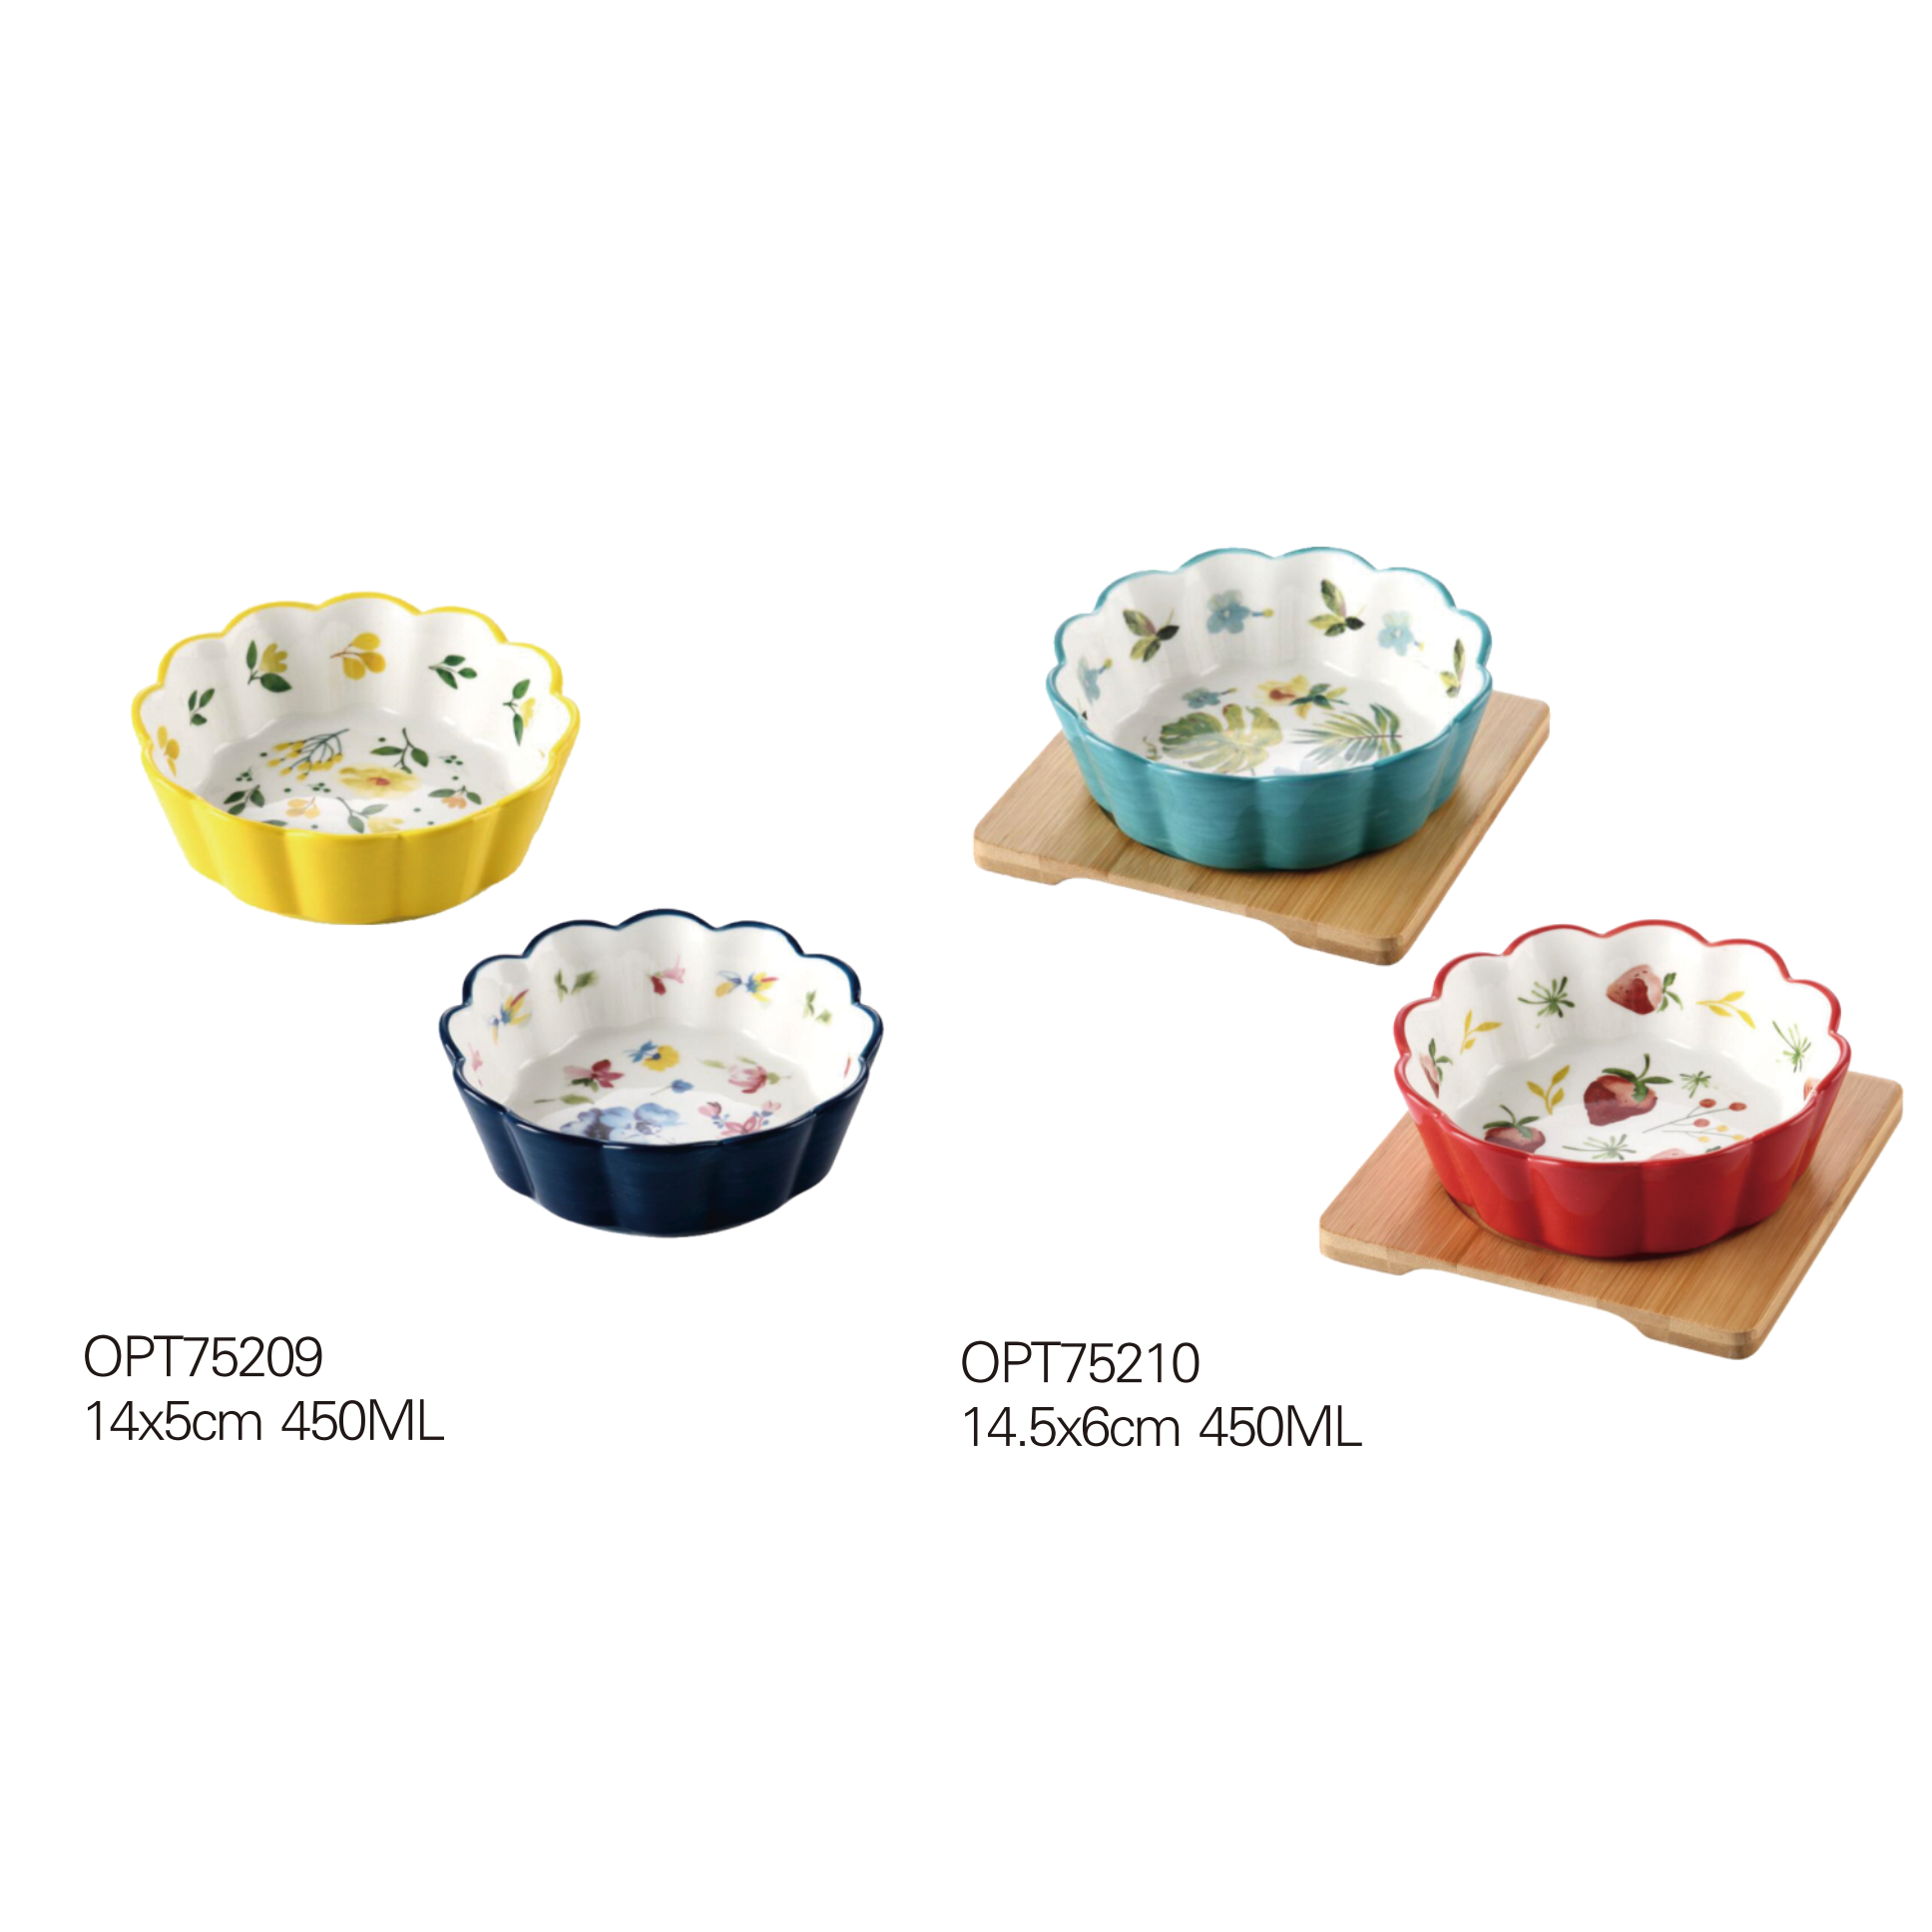 OPT75209-OPT75210 Pet bowls